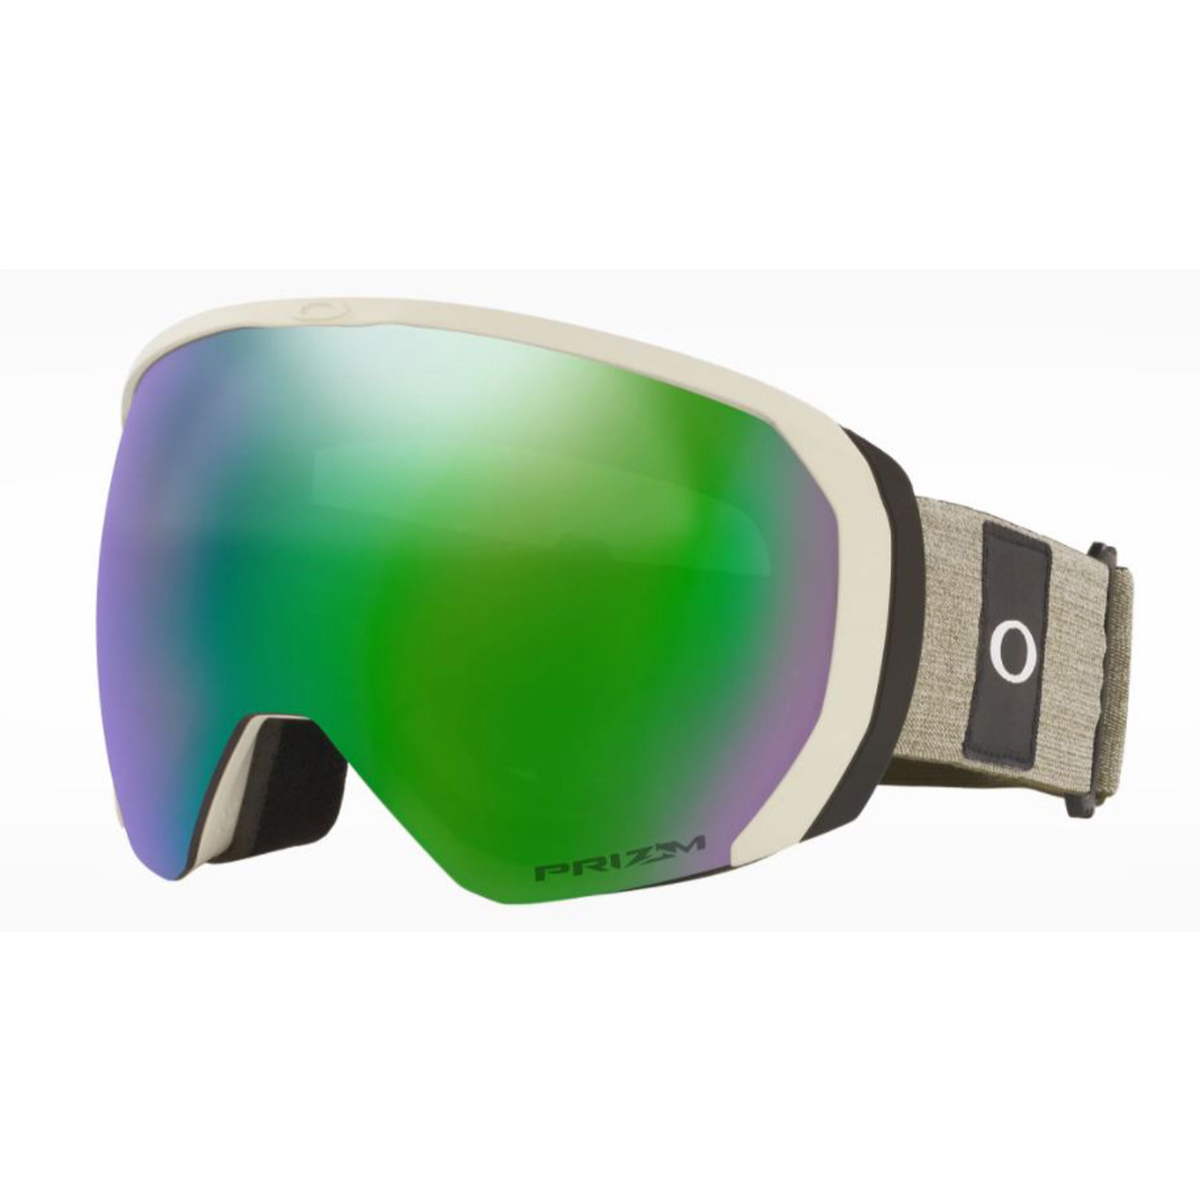 oakley ski goggles on sale